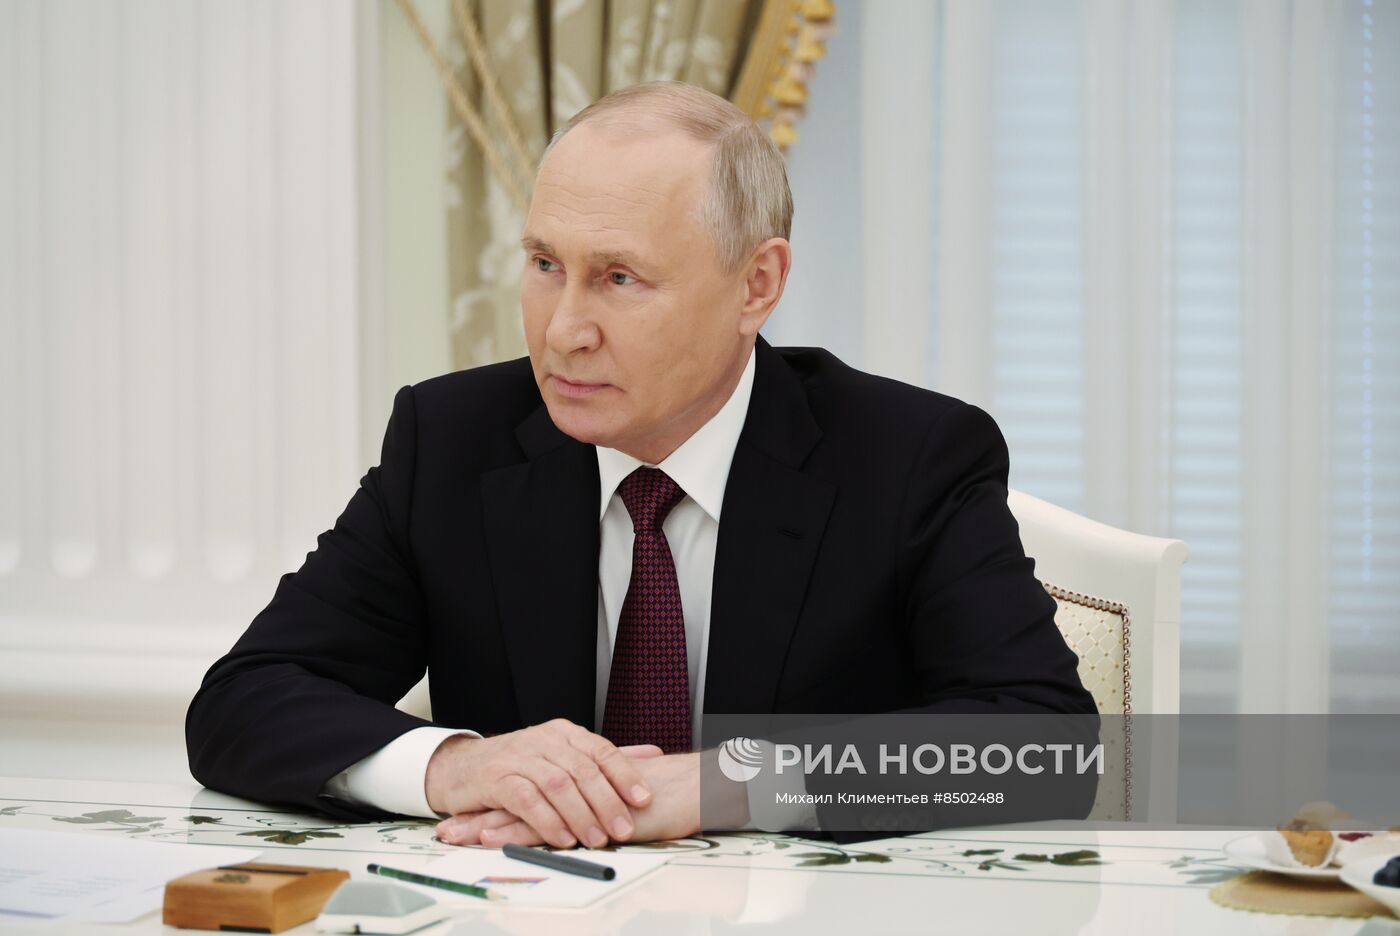 Встреча президента РФ В. Путина с экипажем танка "Алеша"